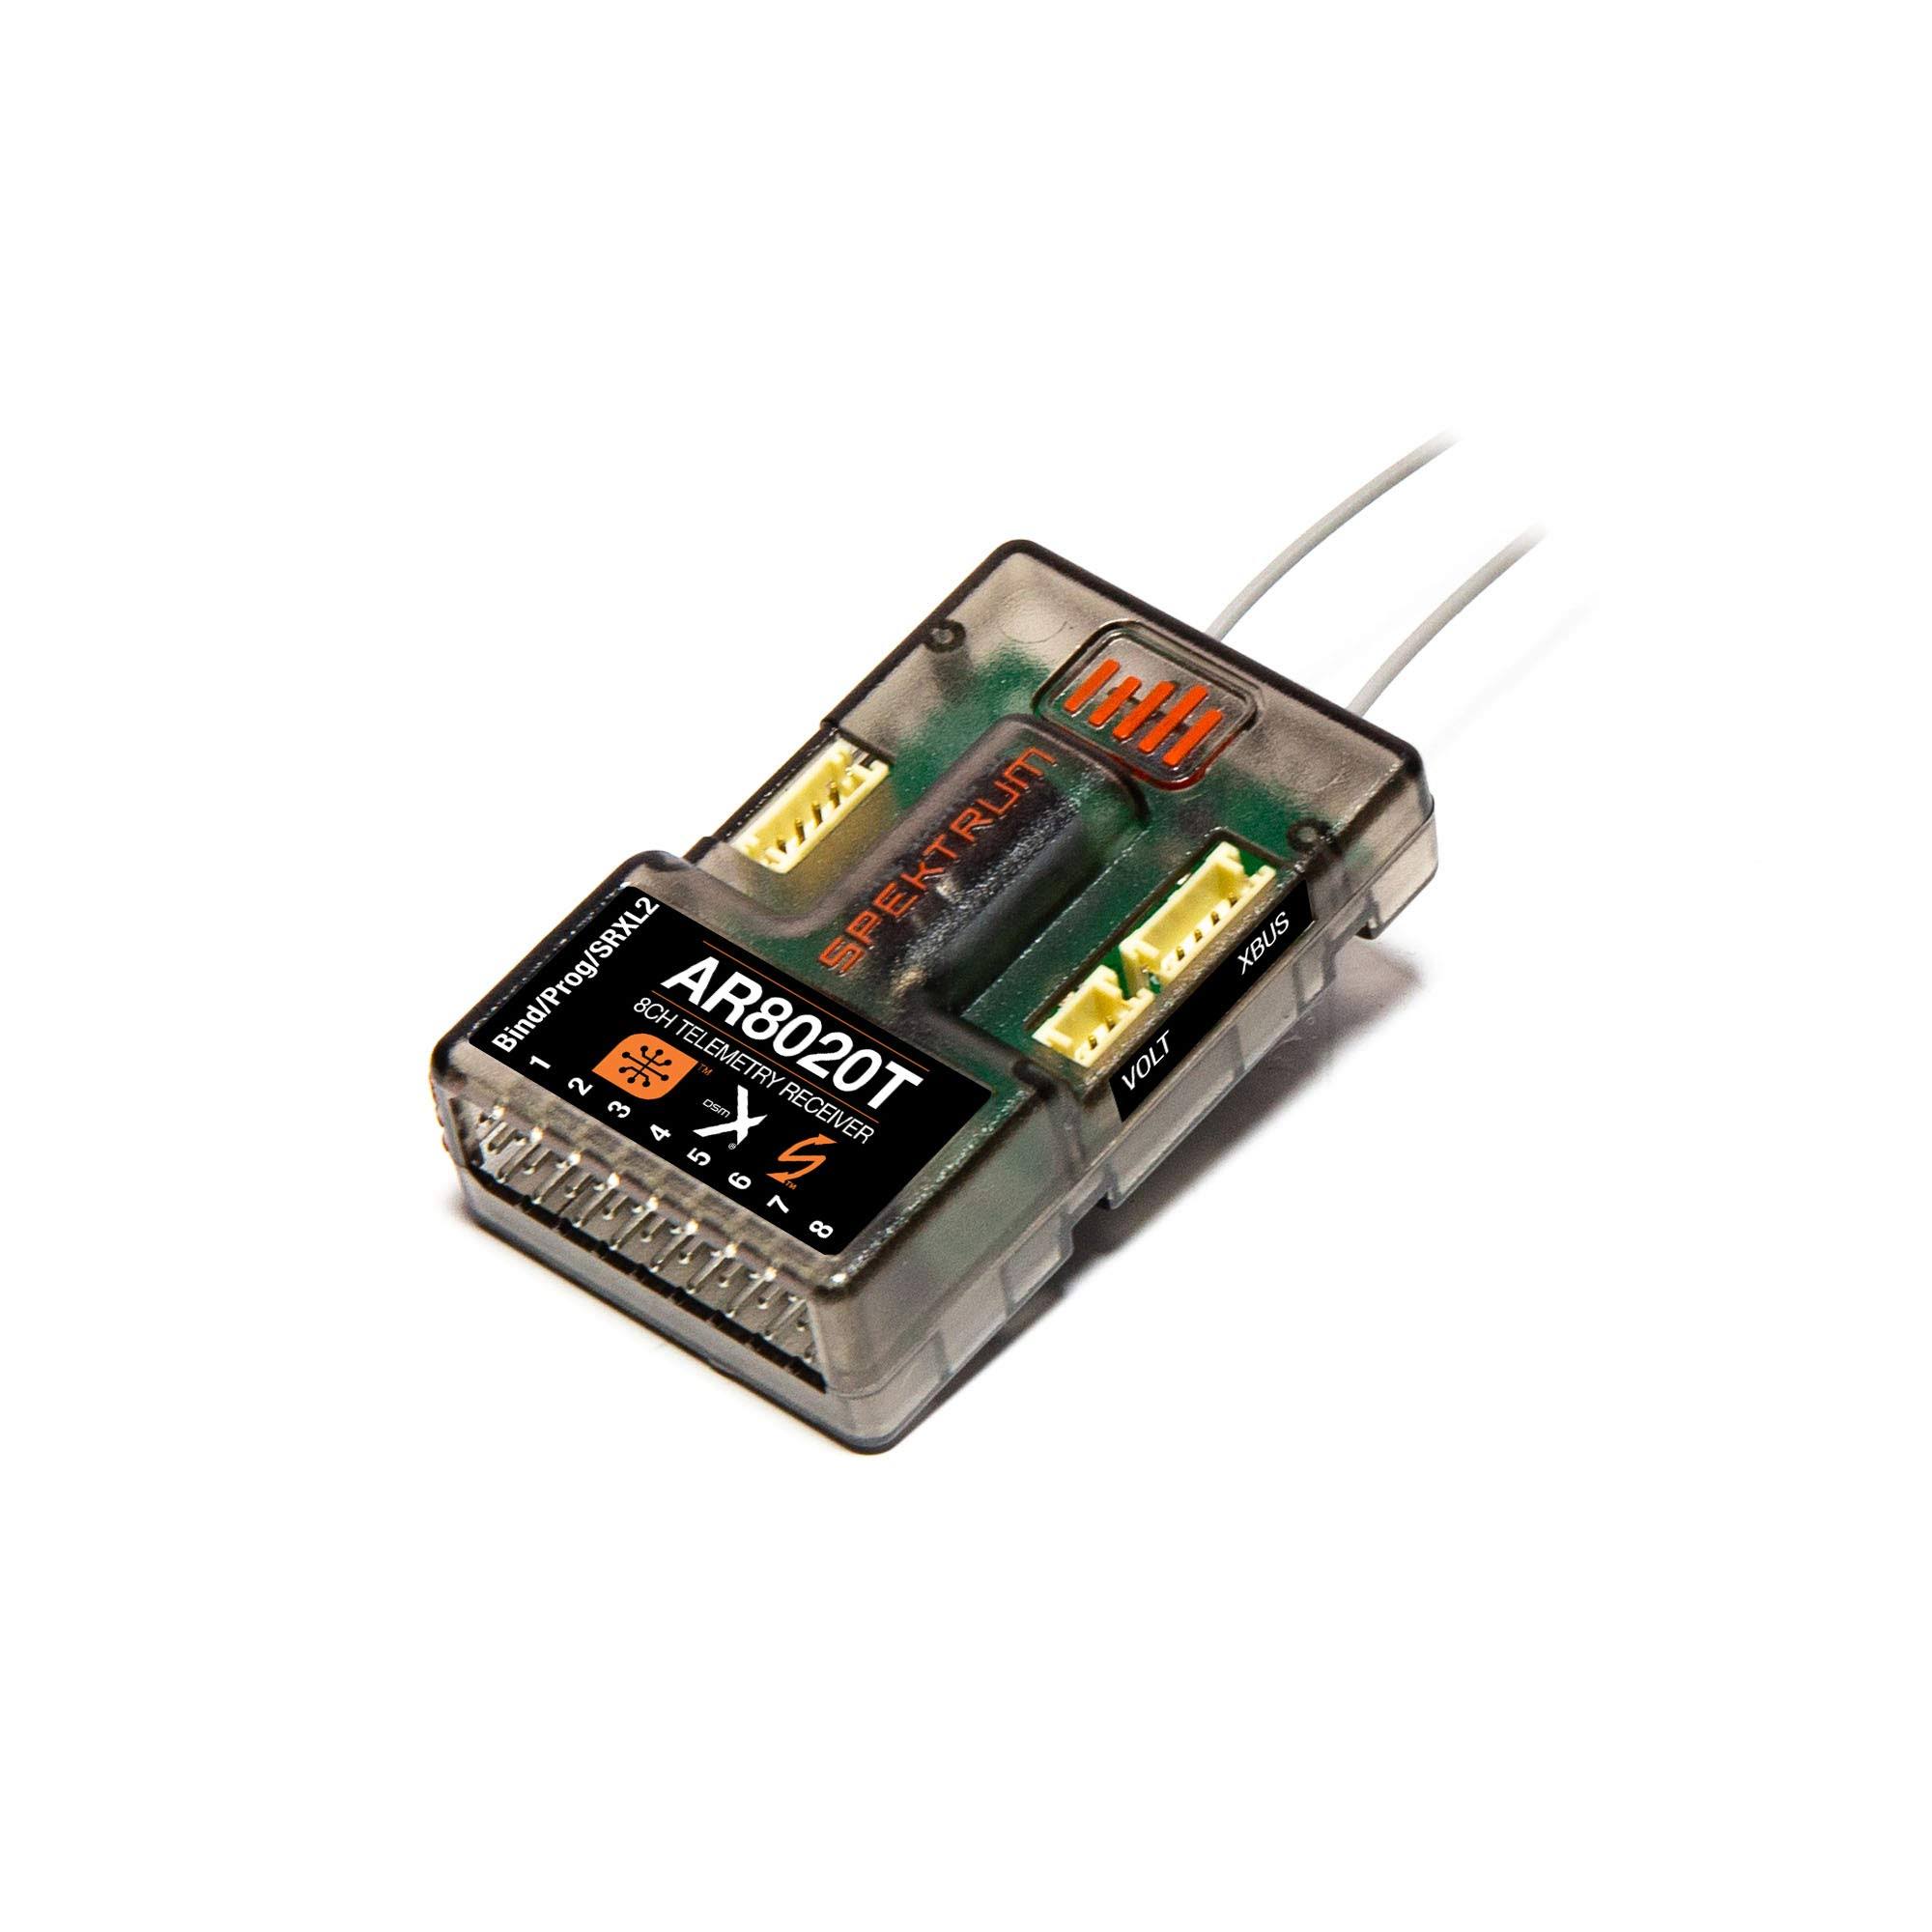 Spektrum AR8020T DSMX 8-Channel Telemetry Receiver